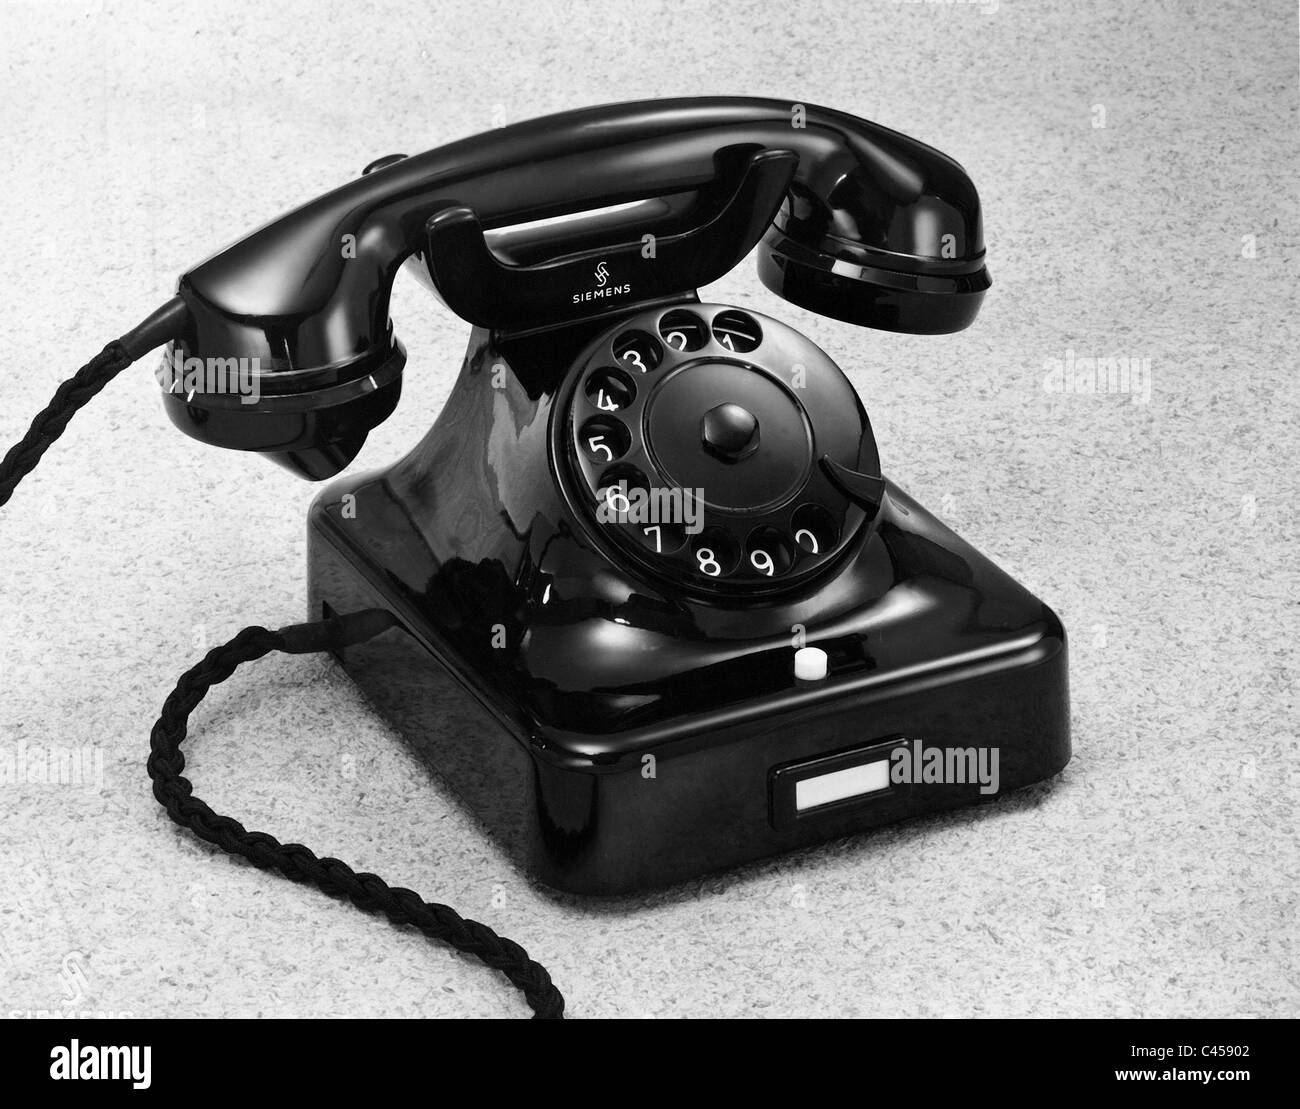 Telefon von Siemens und Halske, 1940 Stockfoto